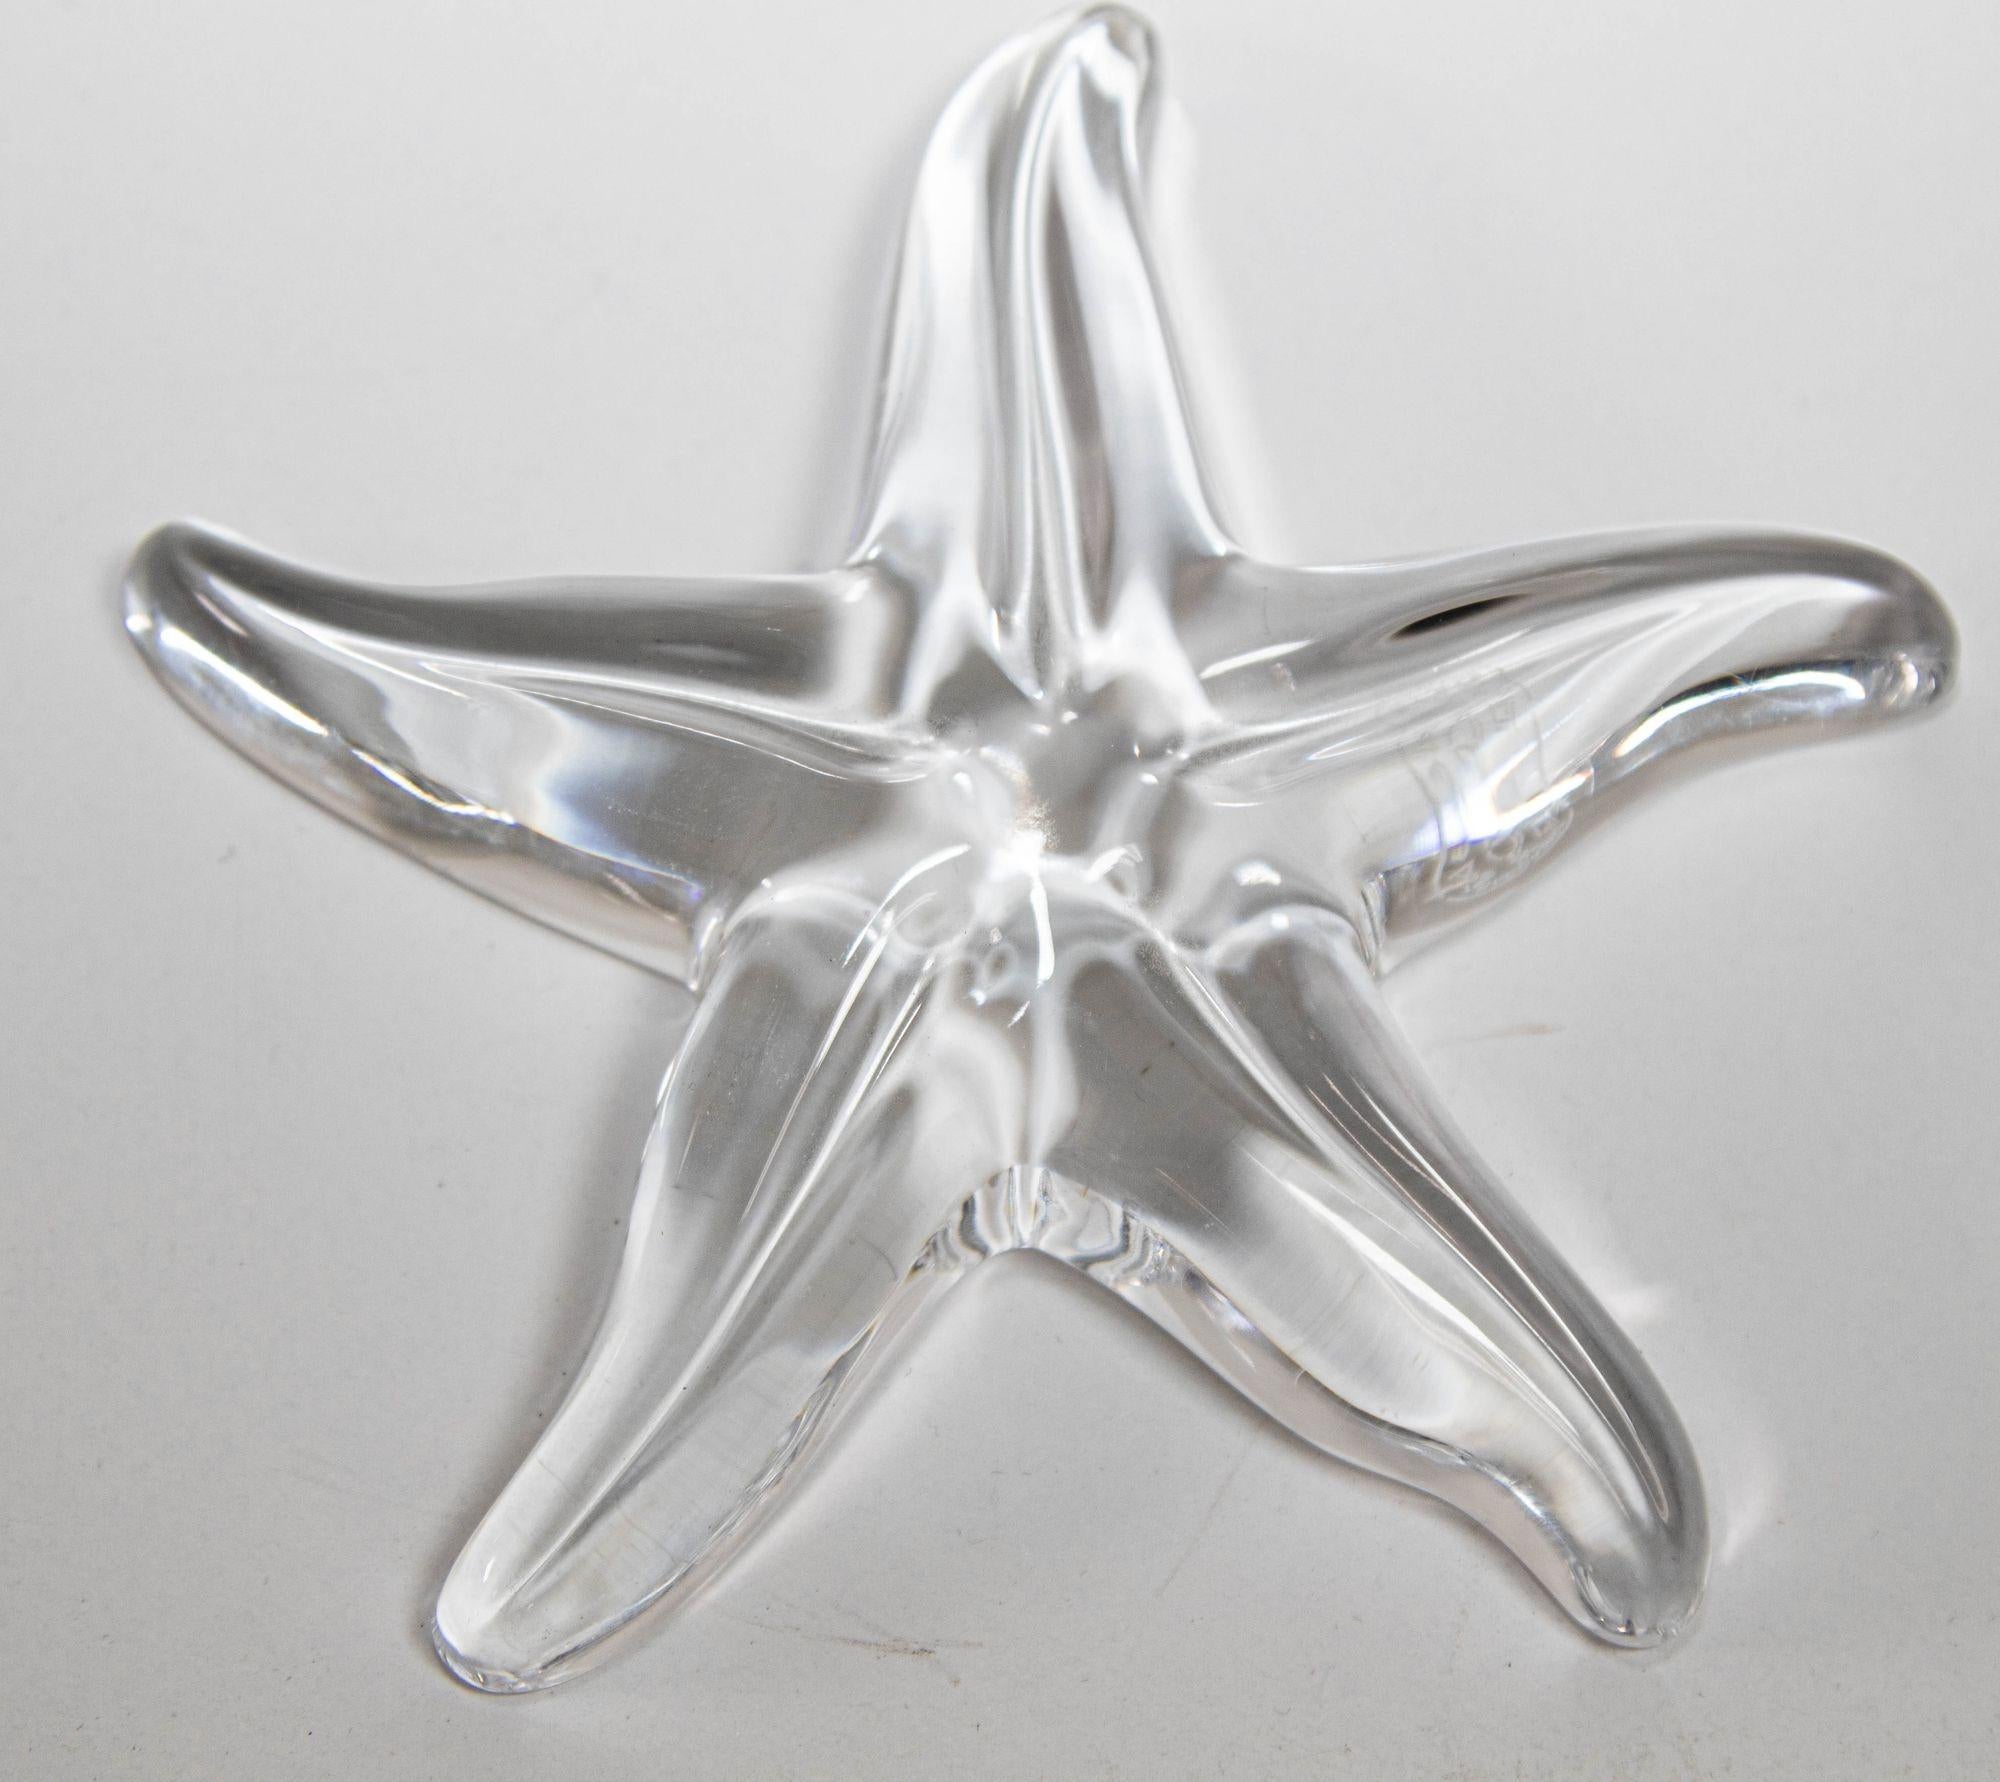 Presse-papier vintage en cristal translucide étoile de mer par Baccarat France.
Cet élégant presse-papier en cristal clair a été réalisé par la Maison Baccarat, l'un des plus grands fabricants de produits en cristal au monde depuis 1765, en